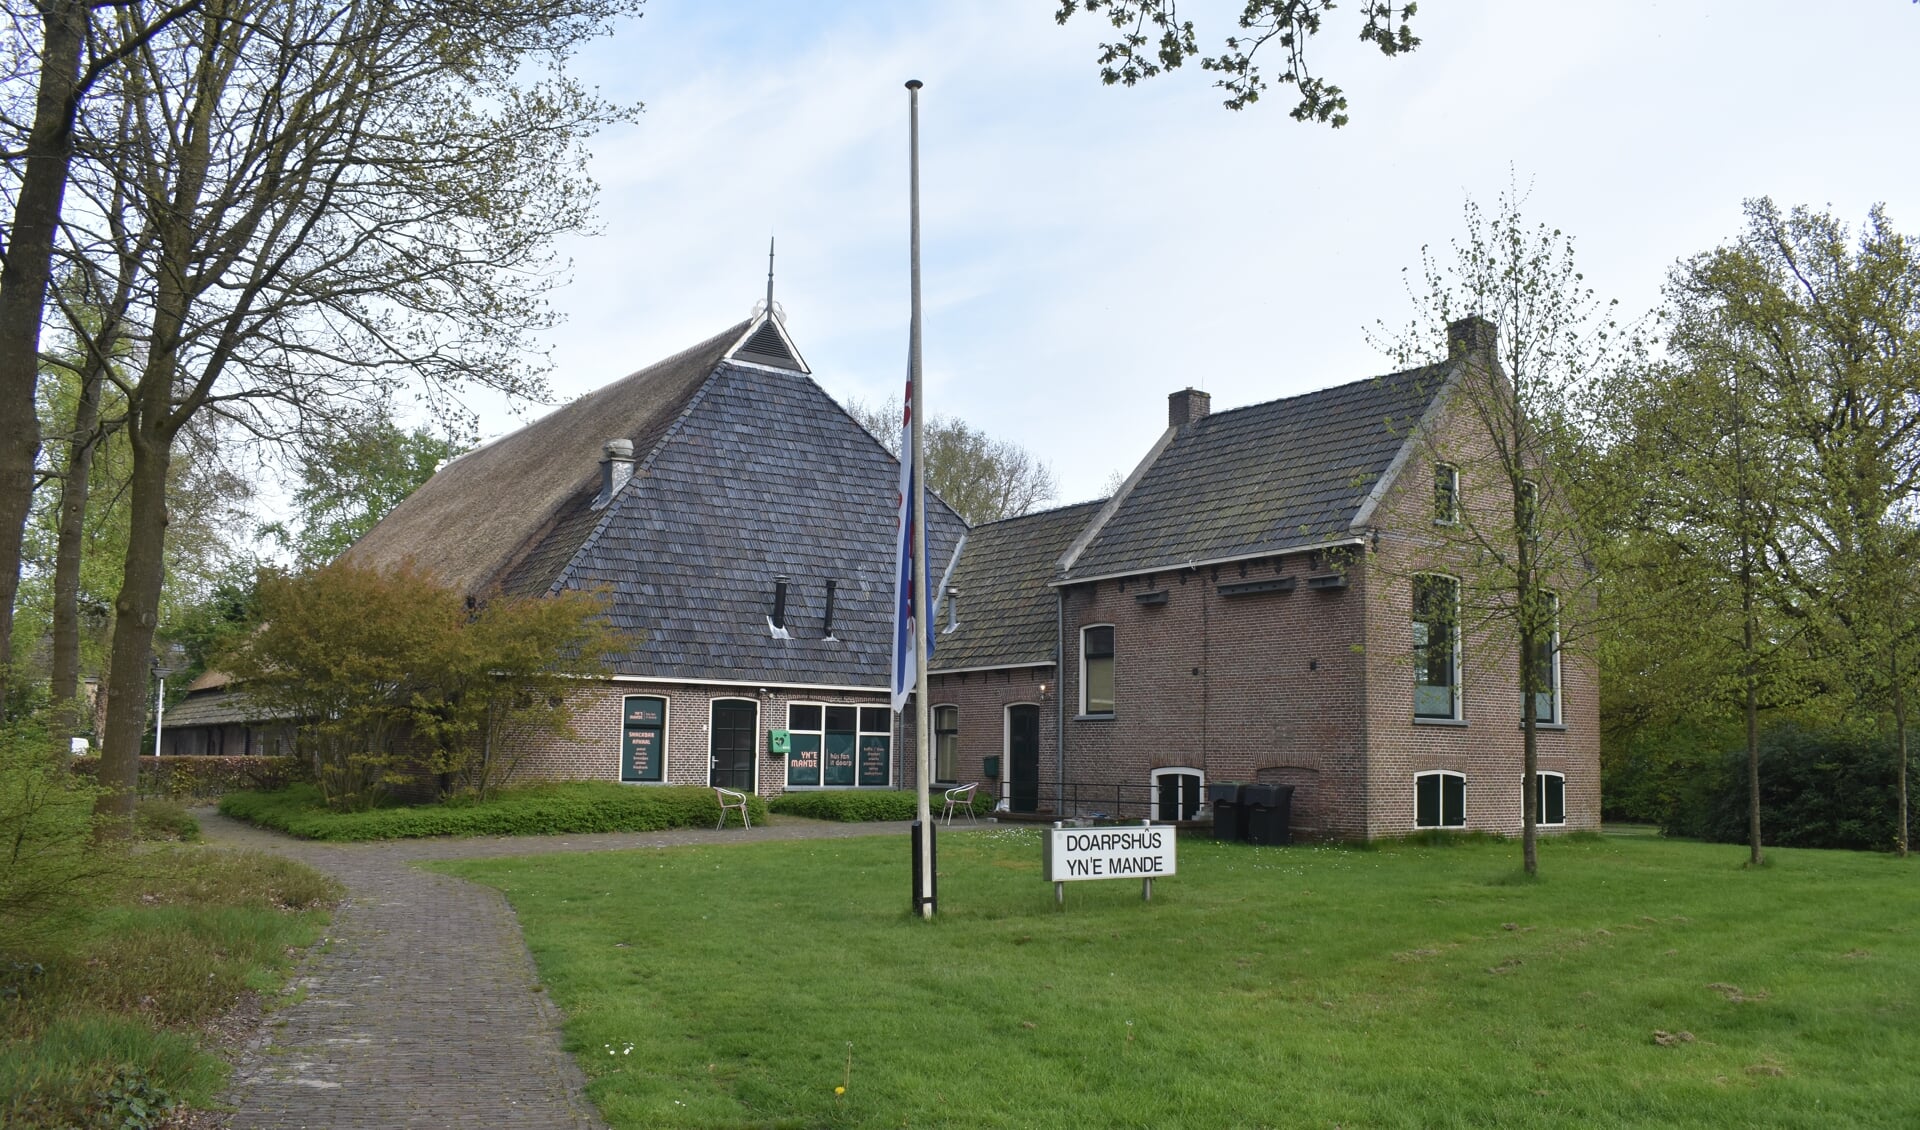 Dorpshuis Yn 'e Mande in Tytsjerk wordt wellicht verbouwd. De vlag hing 4 mei halfstok vanwege de dodenherdenking, maar kan weer in top, nu de raad van Tytsjerksteradiel heeft ingestemd met verhoging van het bouwbudget tot bijna 8,6 miljoen euro.